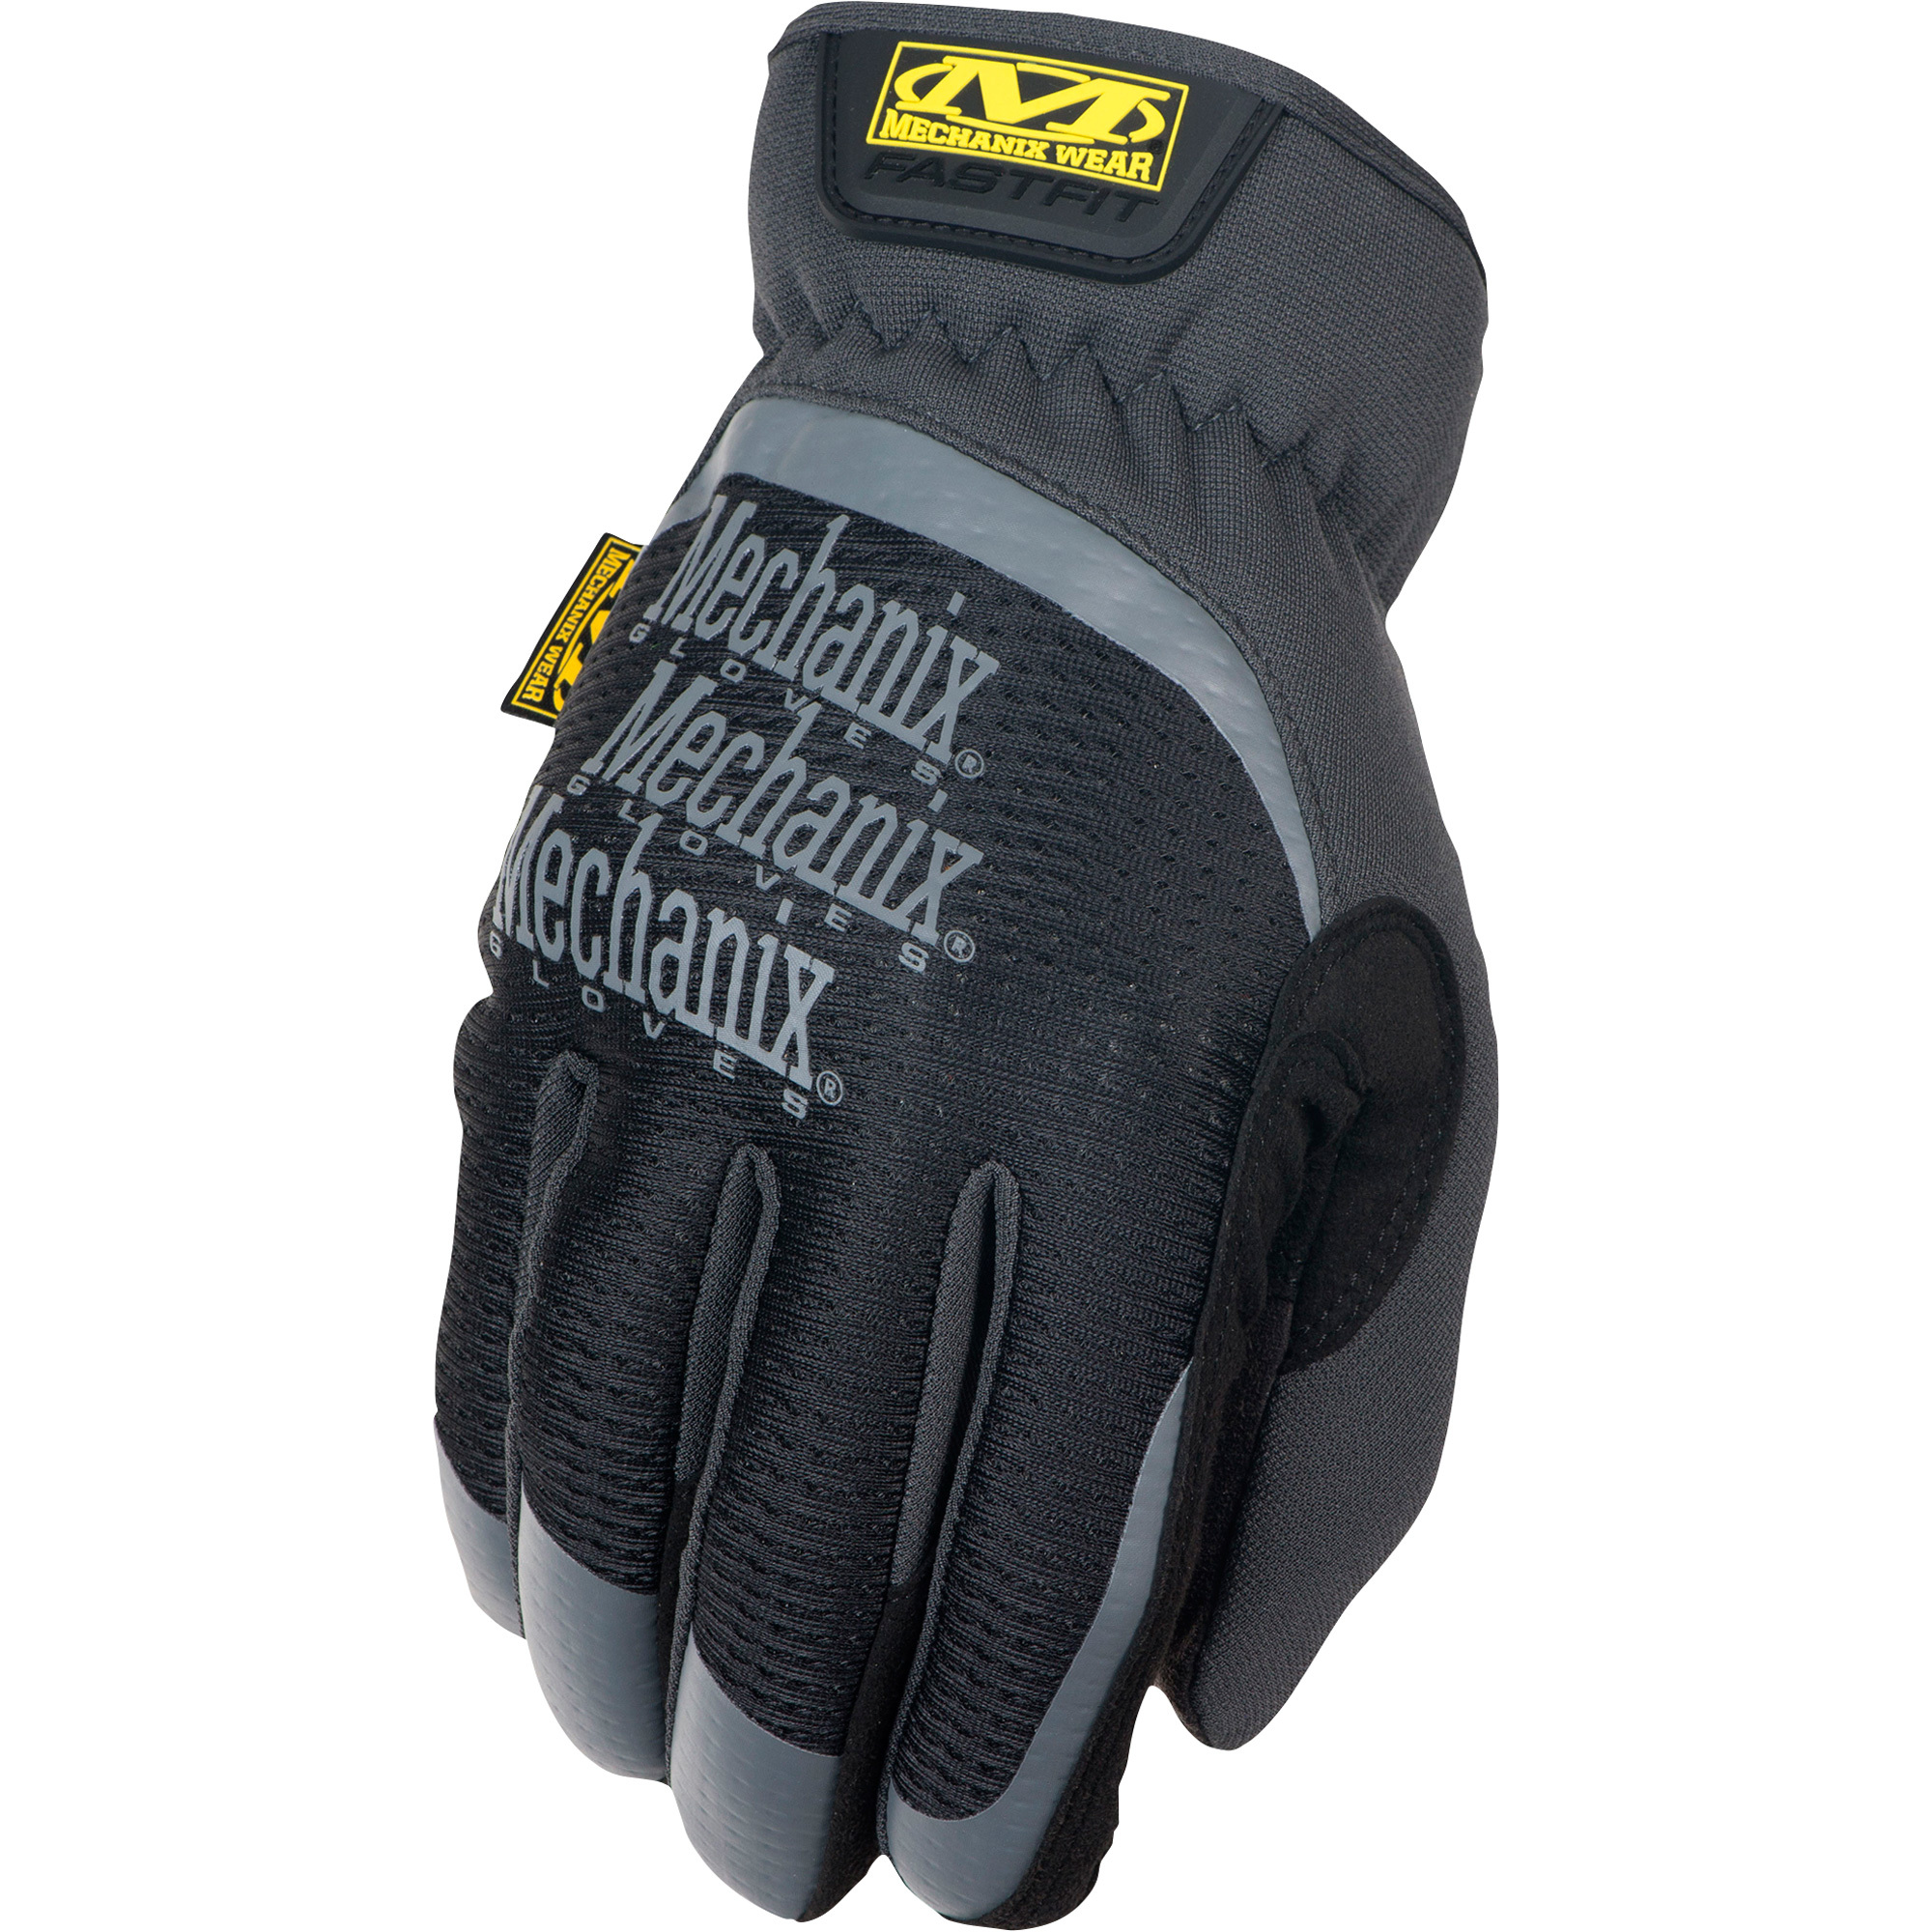 Mechanix Men's Wear FastFit Gloves - Black, Medium, Model MFF-05-009